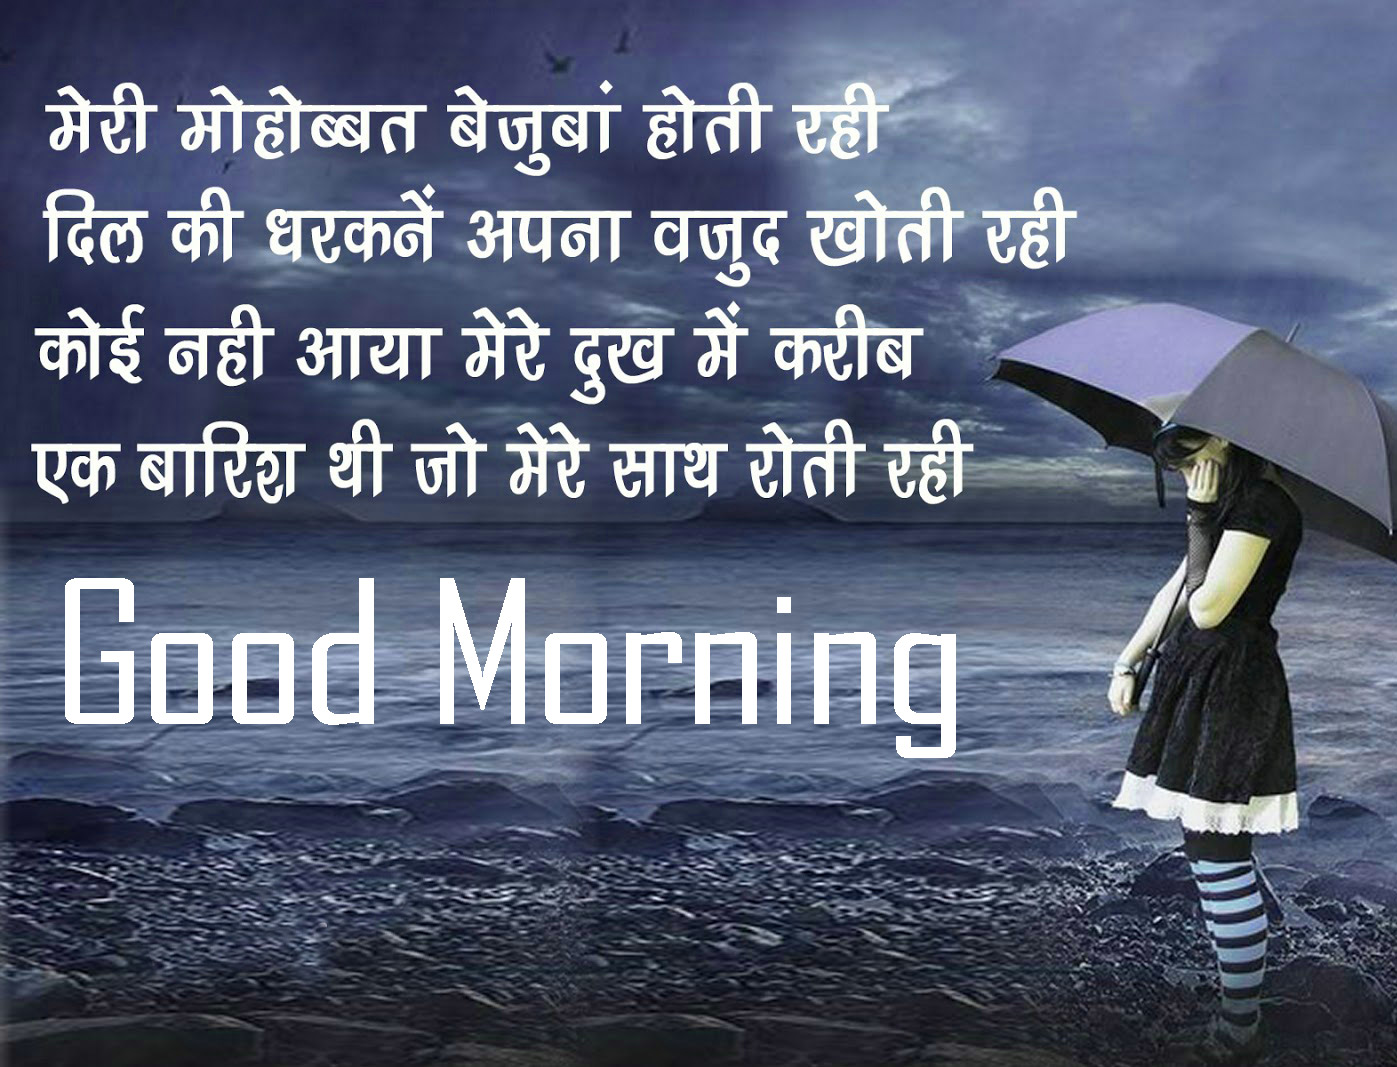 Hindi Quotes good morning photo facebook